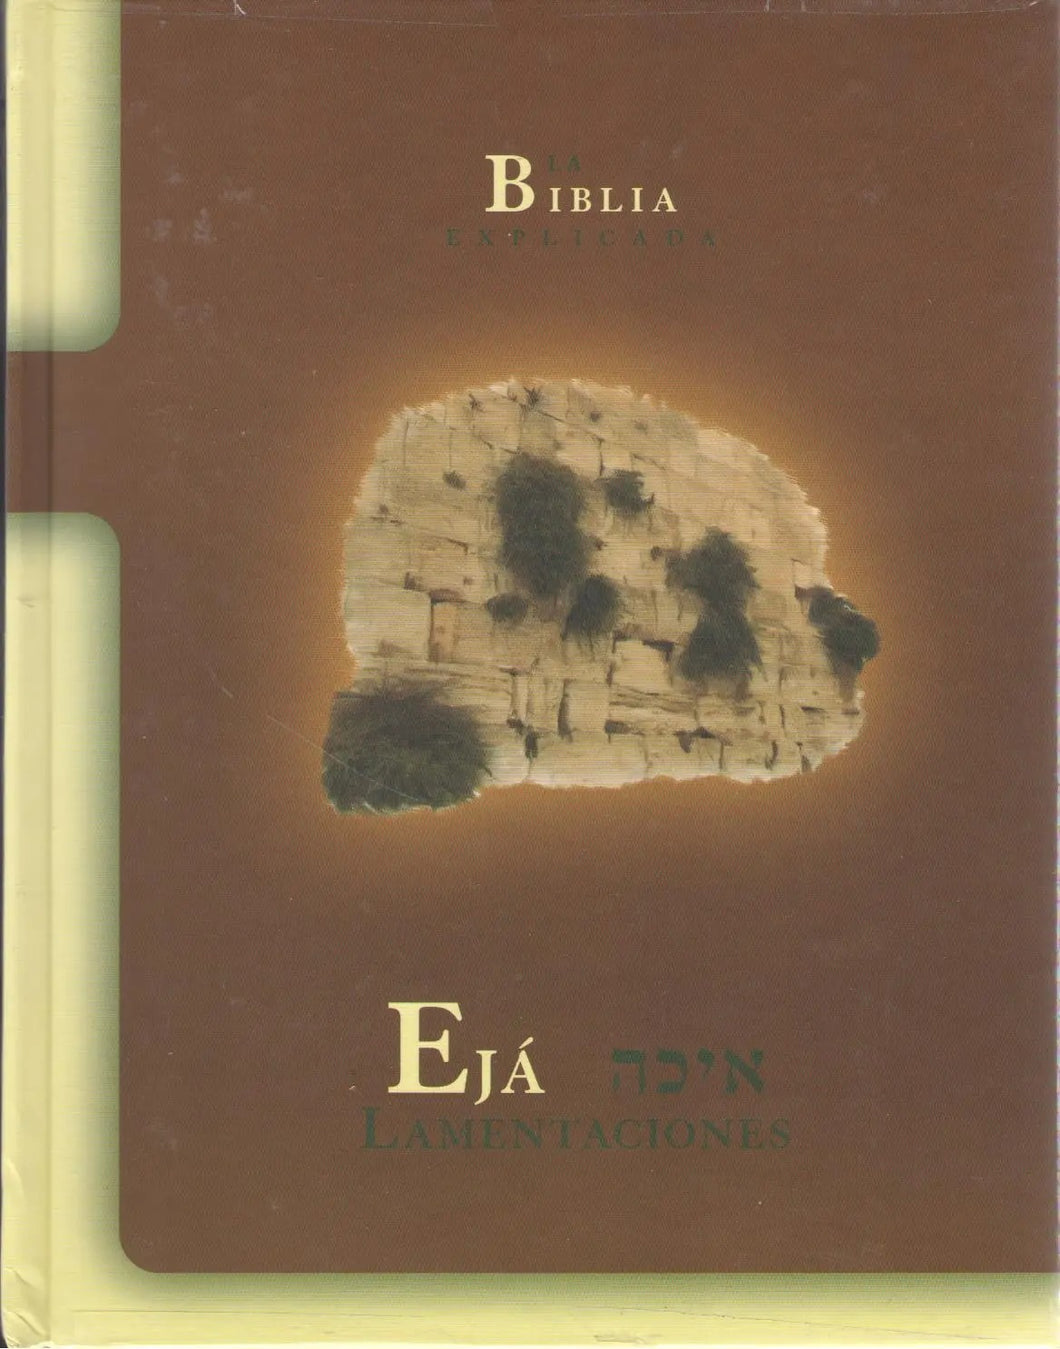 MEGUILA EIJA -LAMENTACIONES (BIBLIA EXPLICADA)